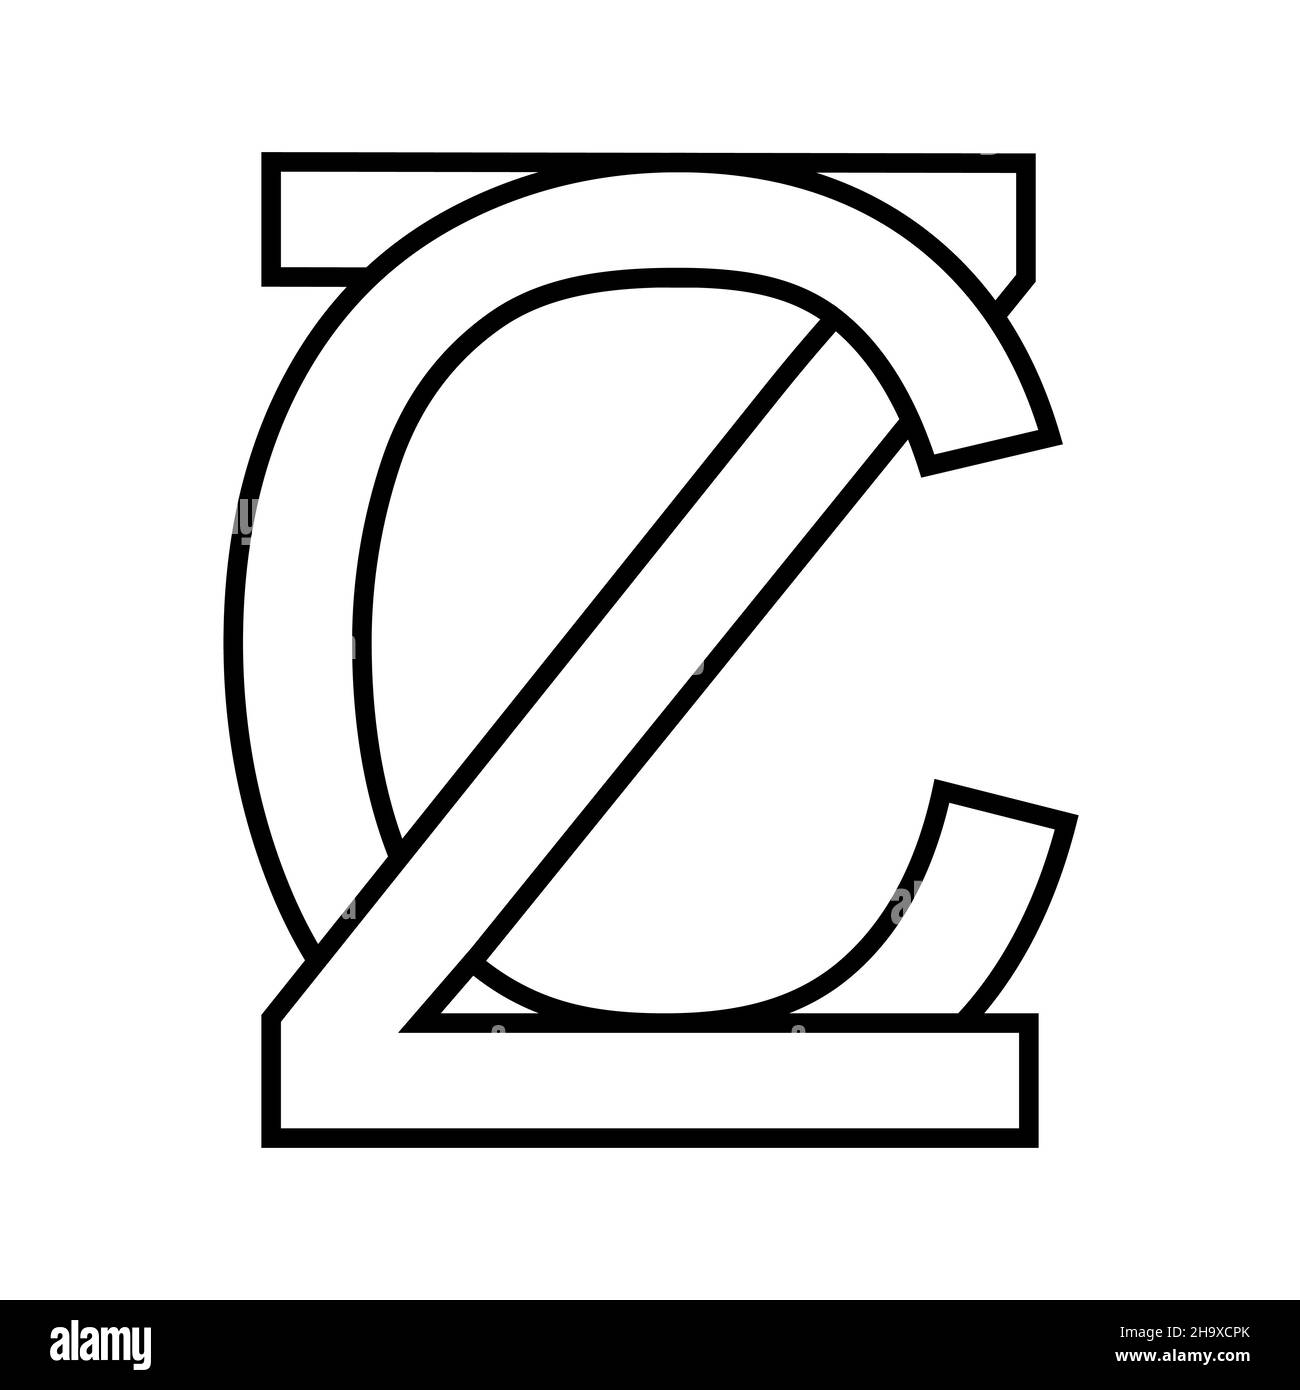 Logo Zeichen zc cz Symbol tschechische Zeilensprungbuchstaben c z Stock Vektor